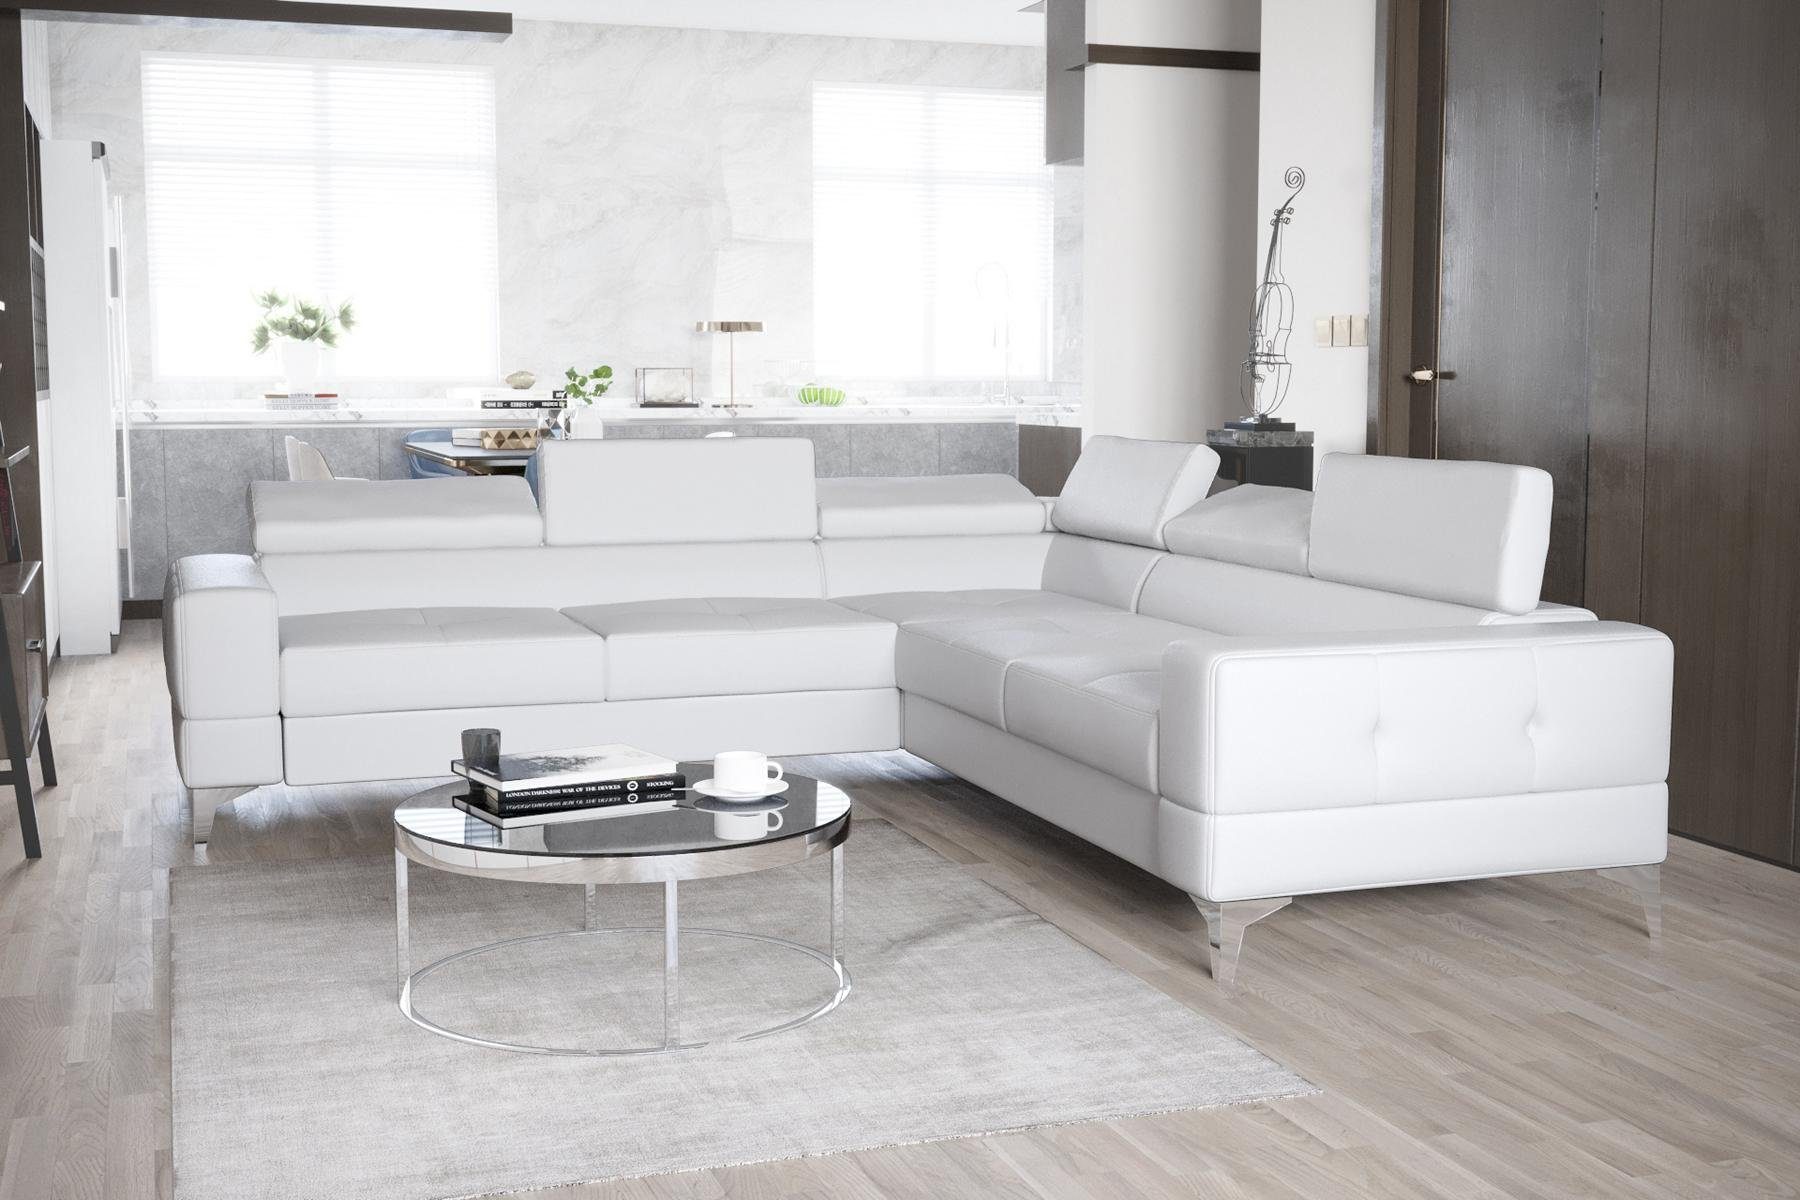 JVmoebel Ecksofa, Ecksofa Wohnzimmer L Form Sofas Couch Design Polsterung Textil Weiß